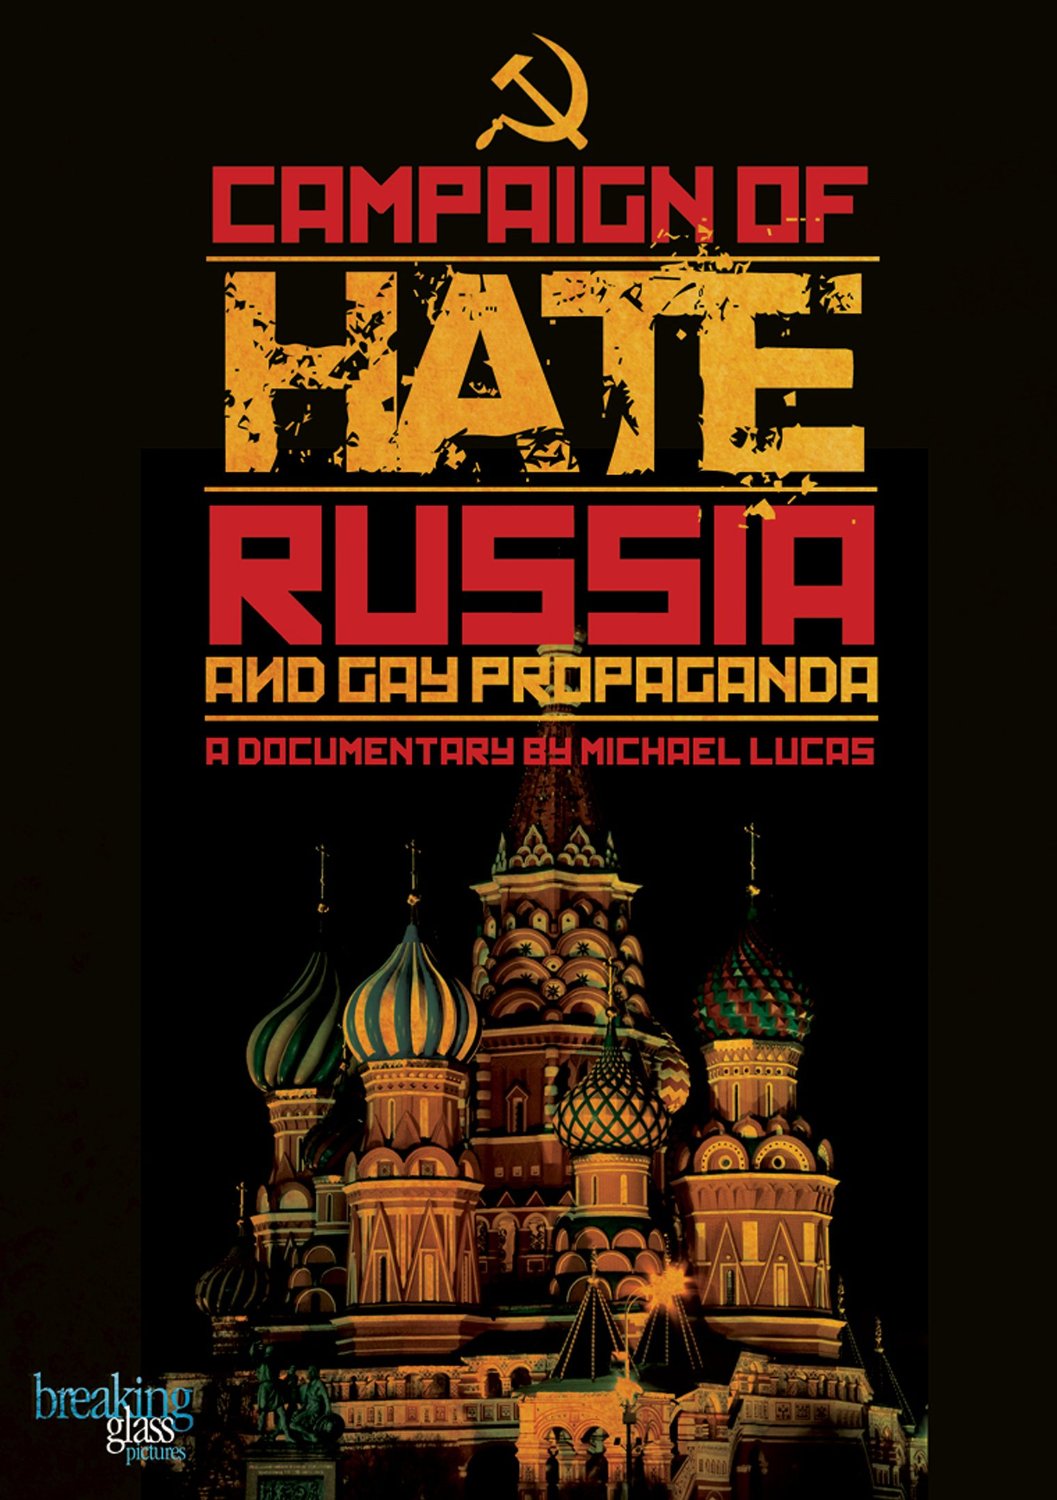 Cinevillage, l'estate padovana col meglio del cinema queer - cinema Campaign of Hate Russia Gay Propaganda - Gay.it